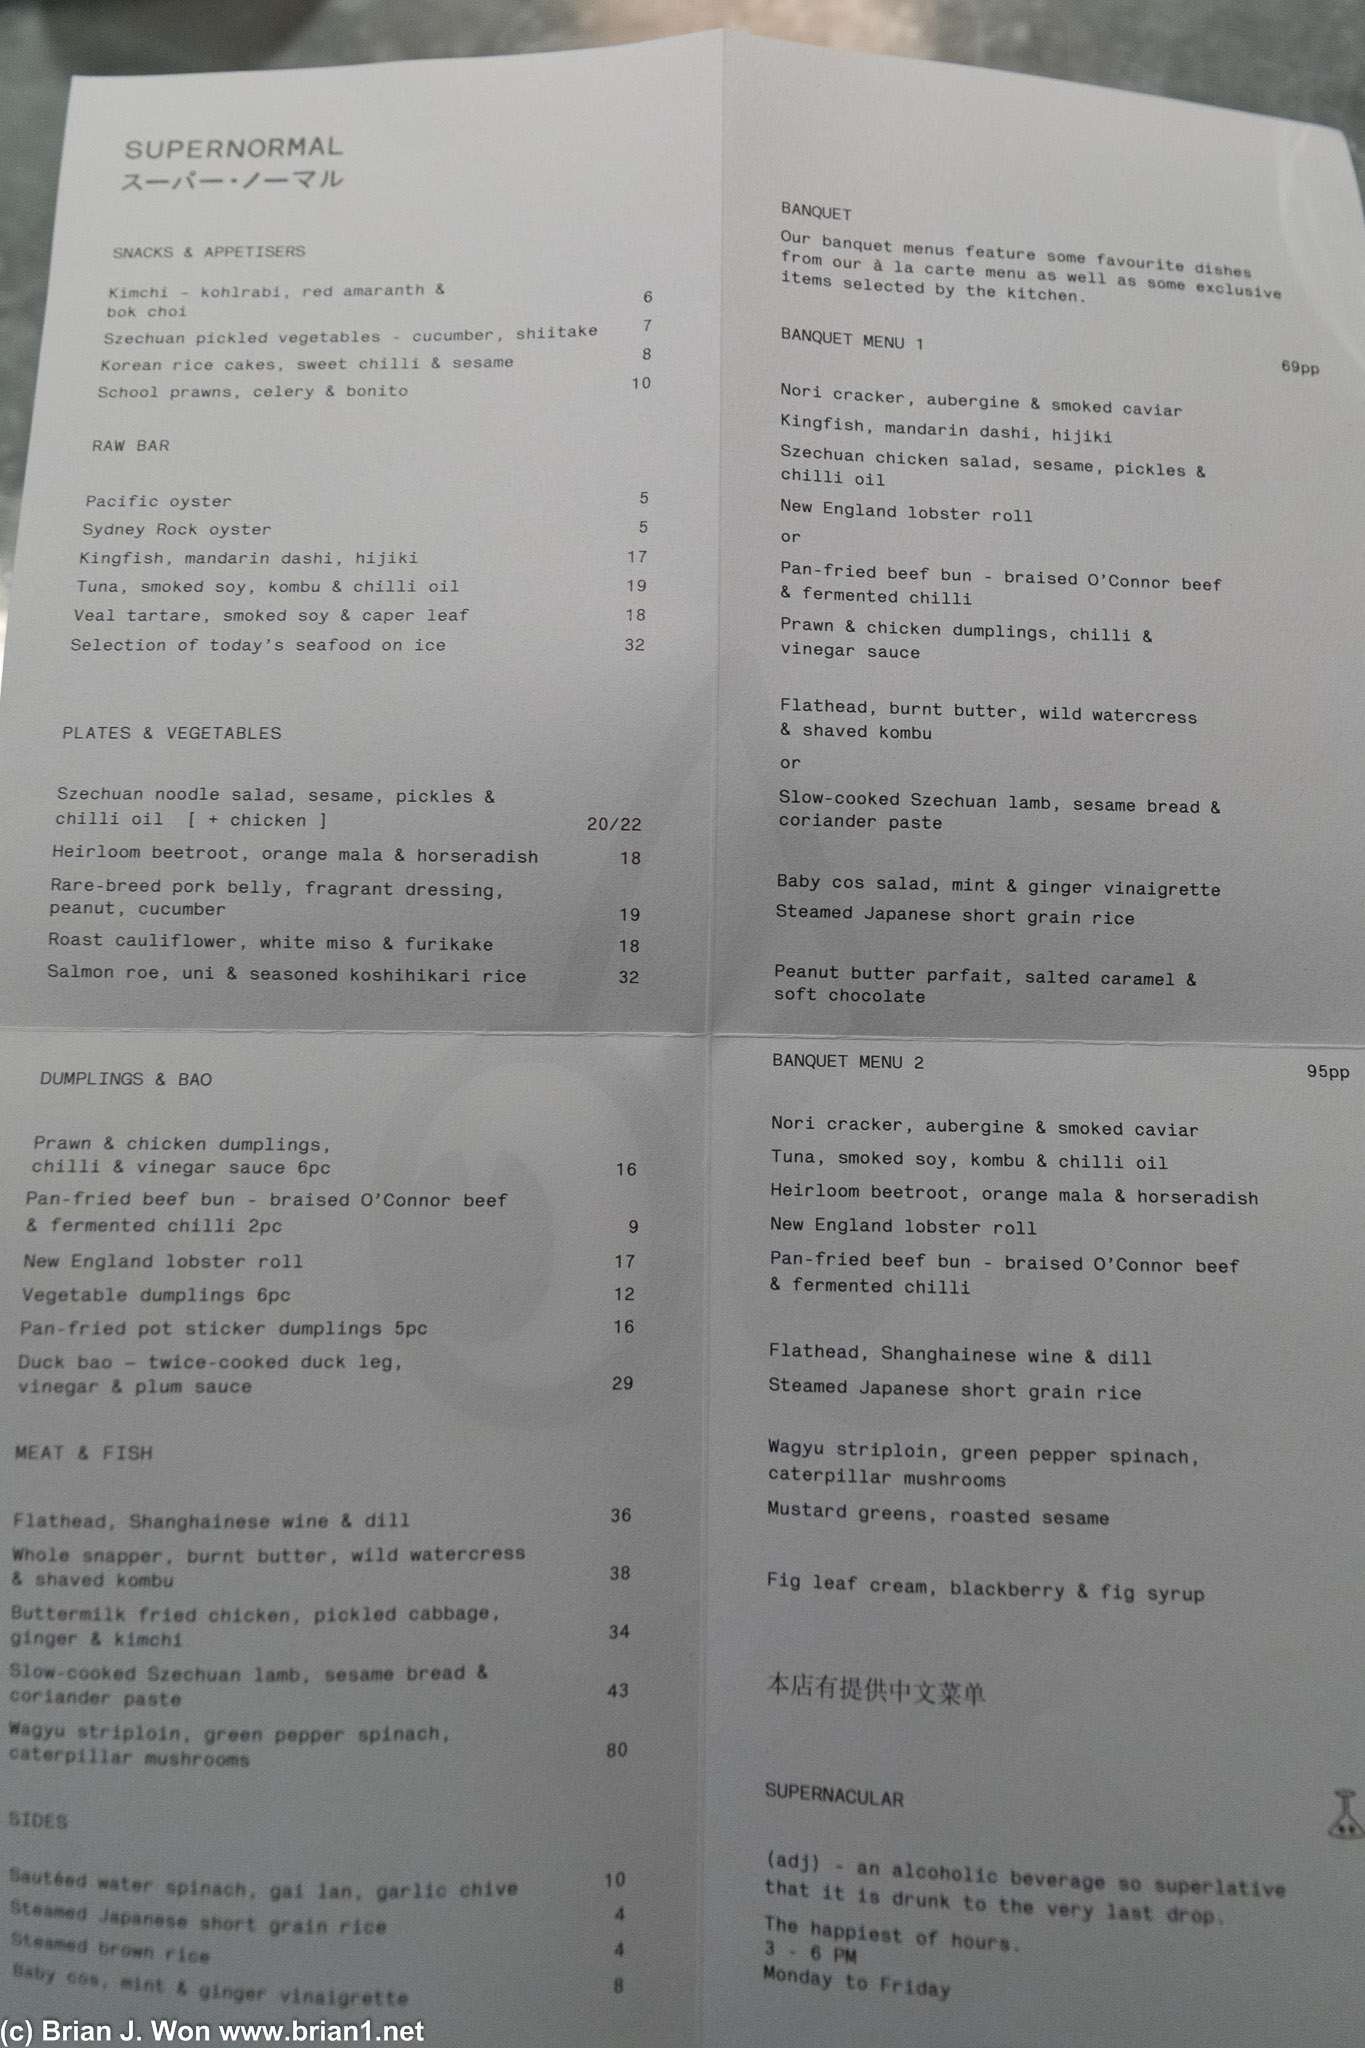 The menu at Supernormal.